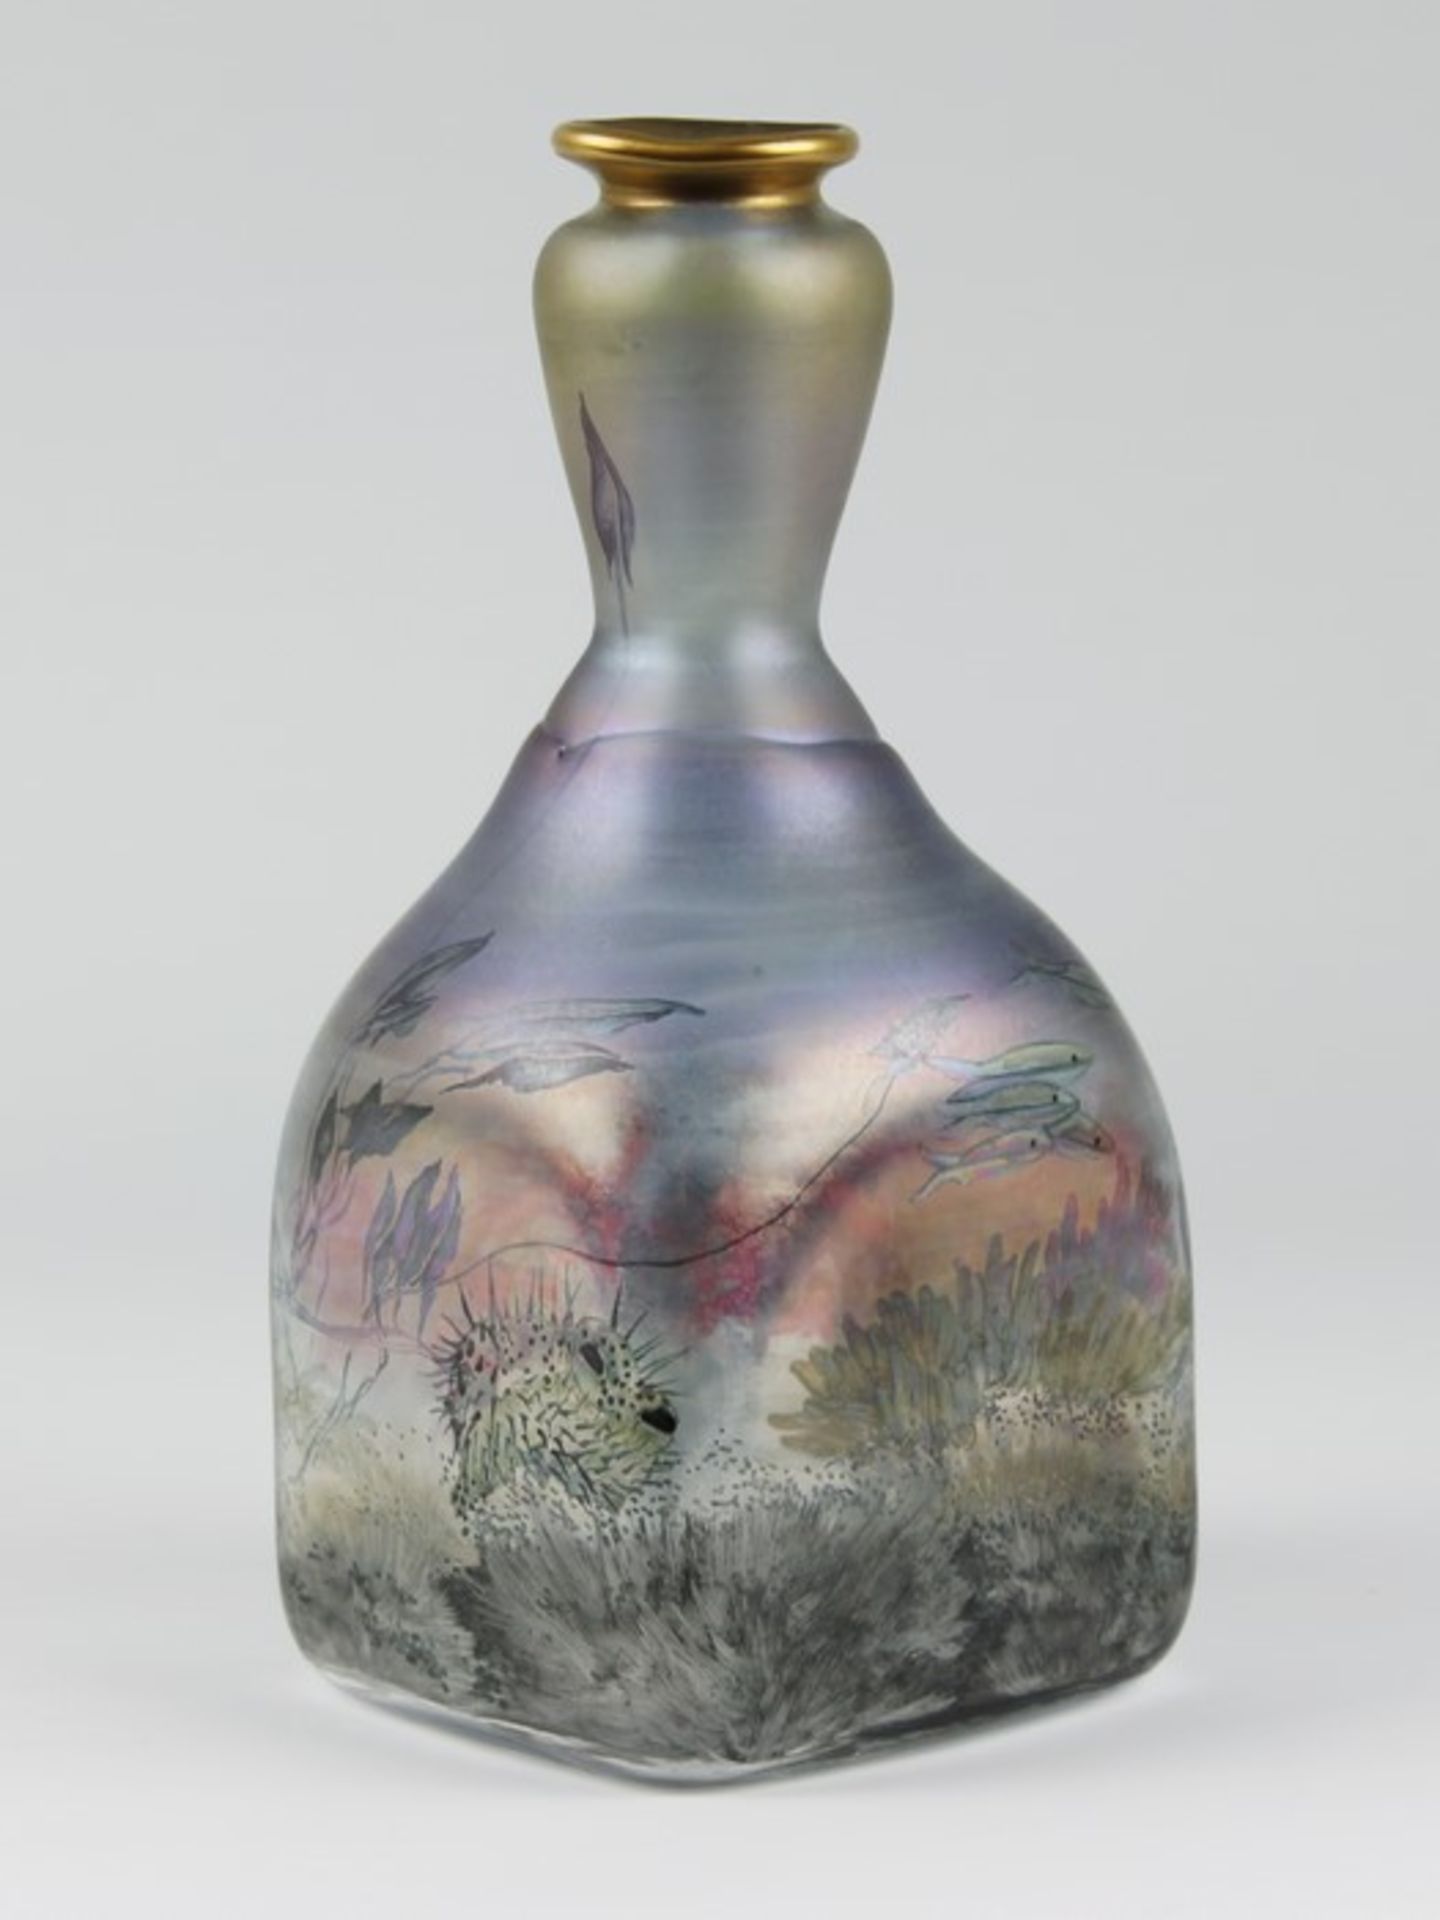 Eisch - Vase1985, Glashütte Eisch, Frauenau, farbloses Glas, quadratischer Stand, geschliffener - Image 2 of 2